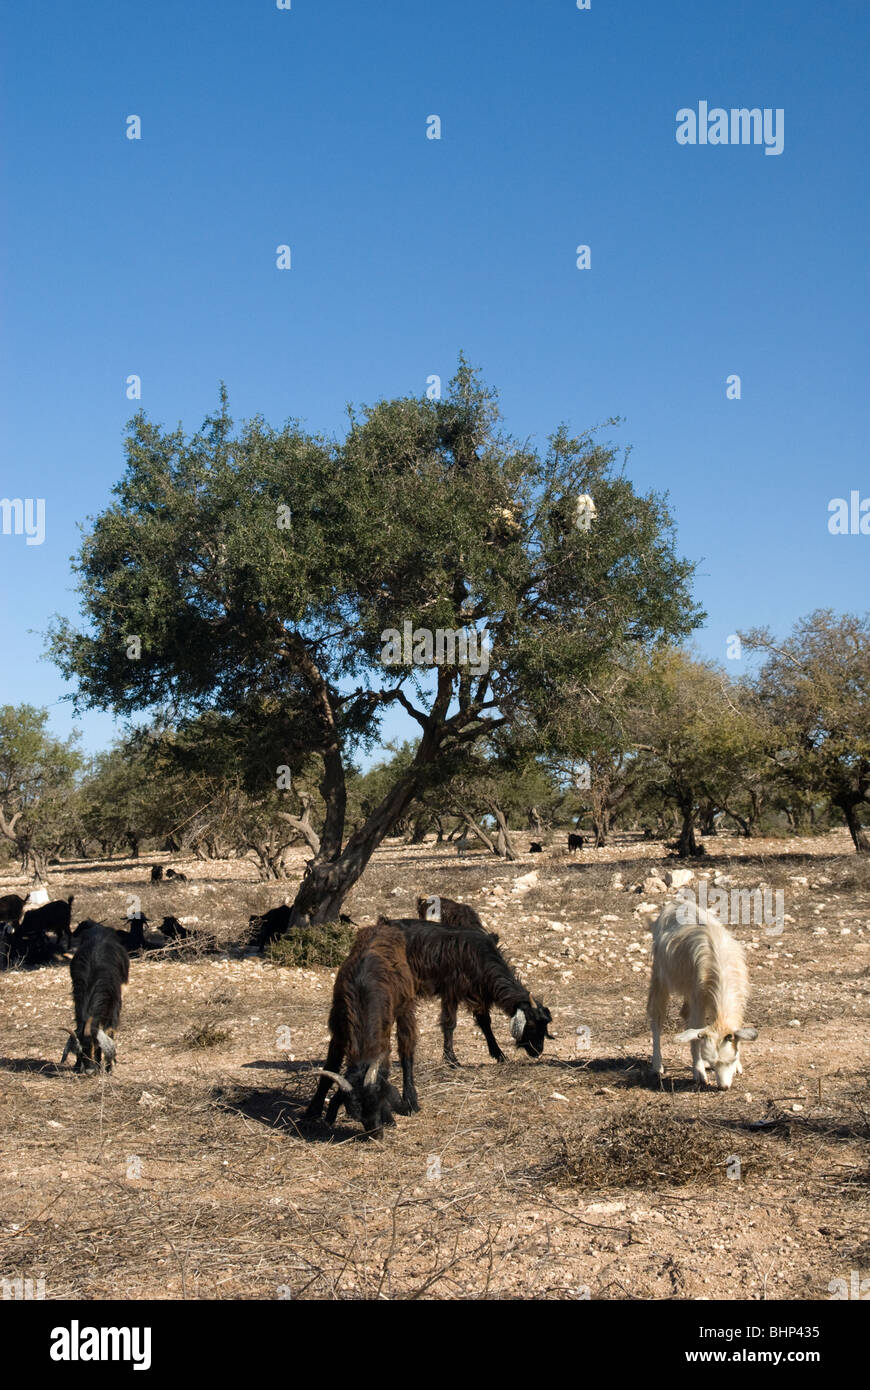 Les chèvres debout dans un arganier (Argania spinosa) pour se nourrir de fruits et les feuilles. La région de Marrakech-Tensift-El Haouz, Maroc. Banque D'Images